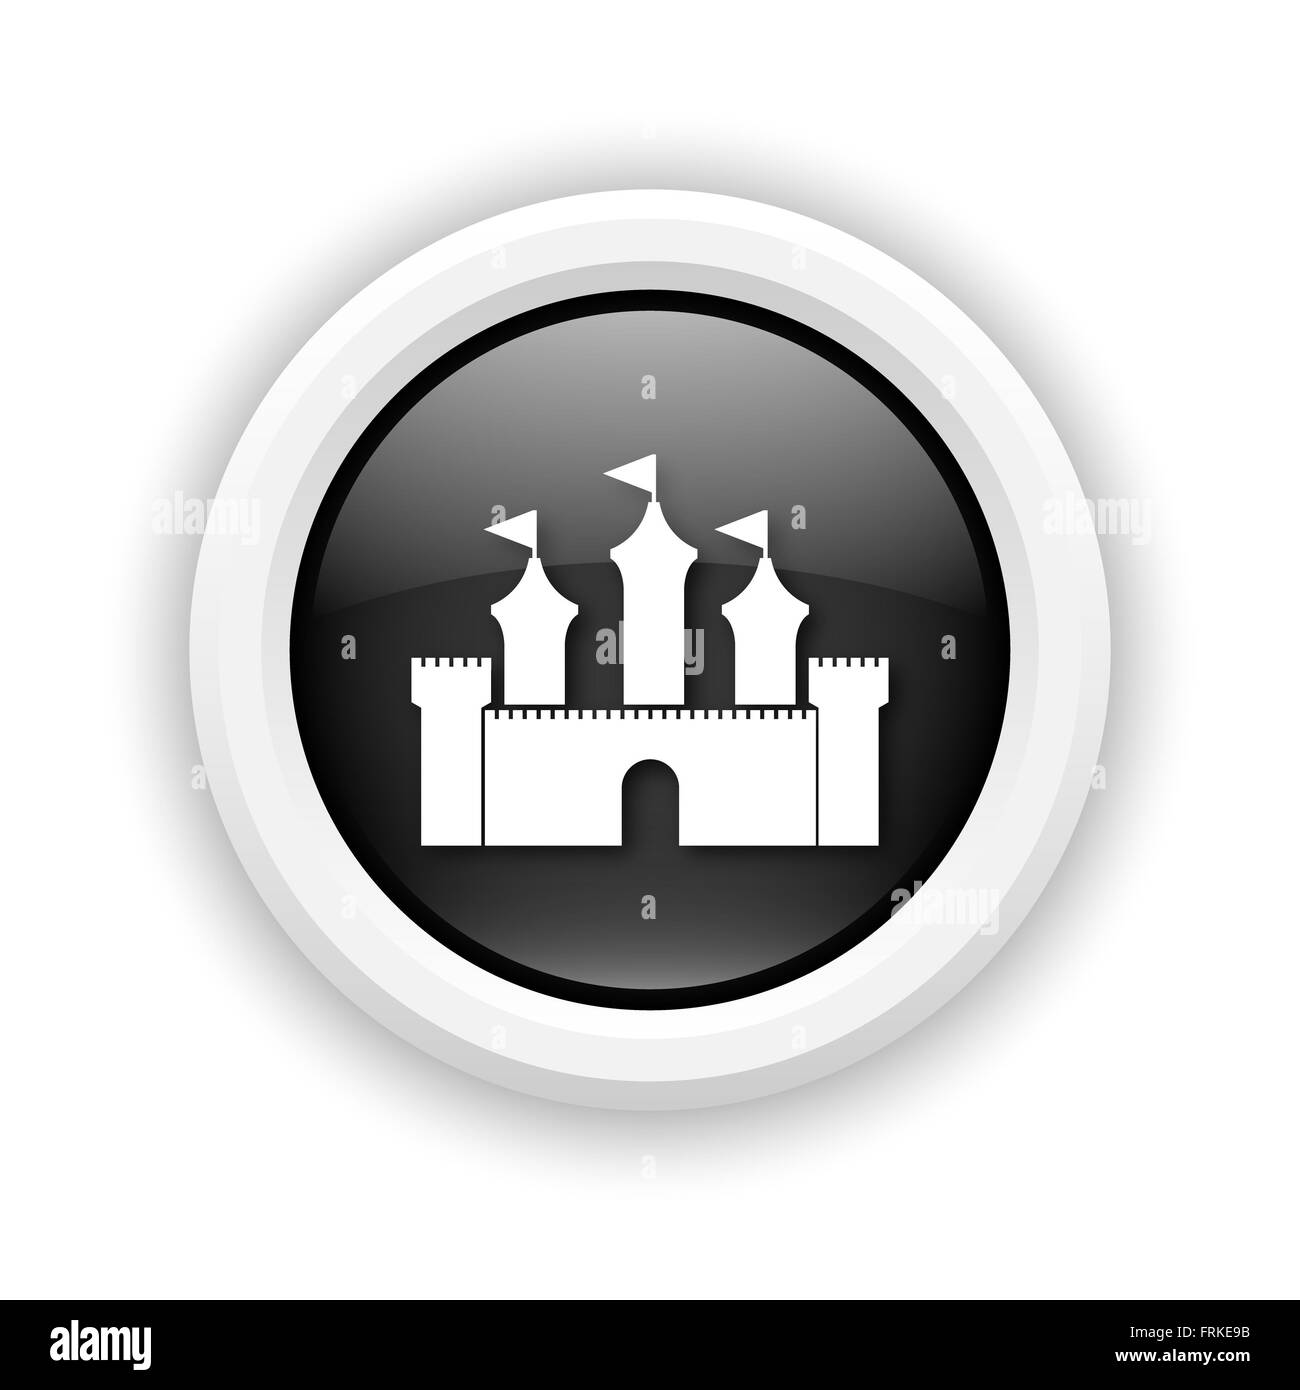 Runde Kunststoff-Symbol mit Design in weiß auf schwarzem Hintergrund Stockfoto